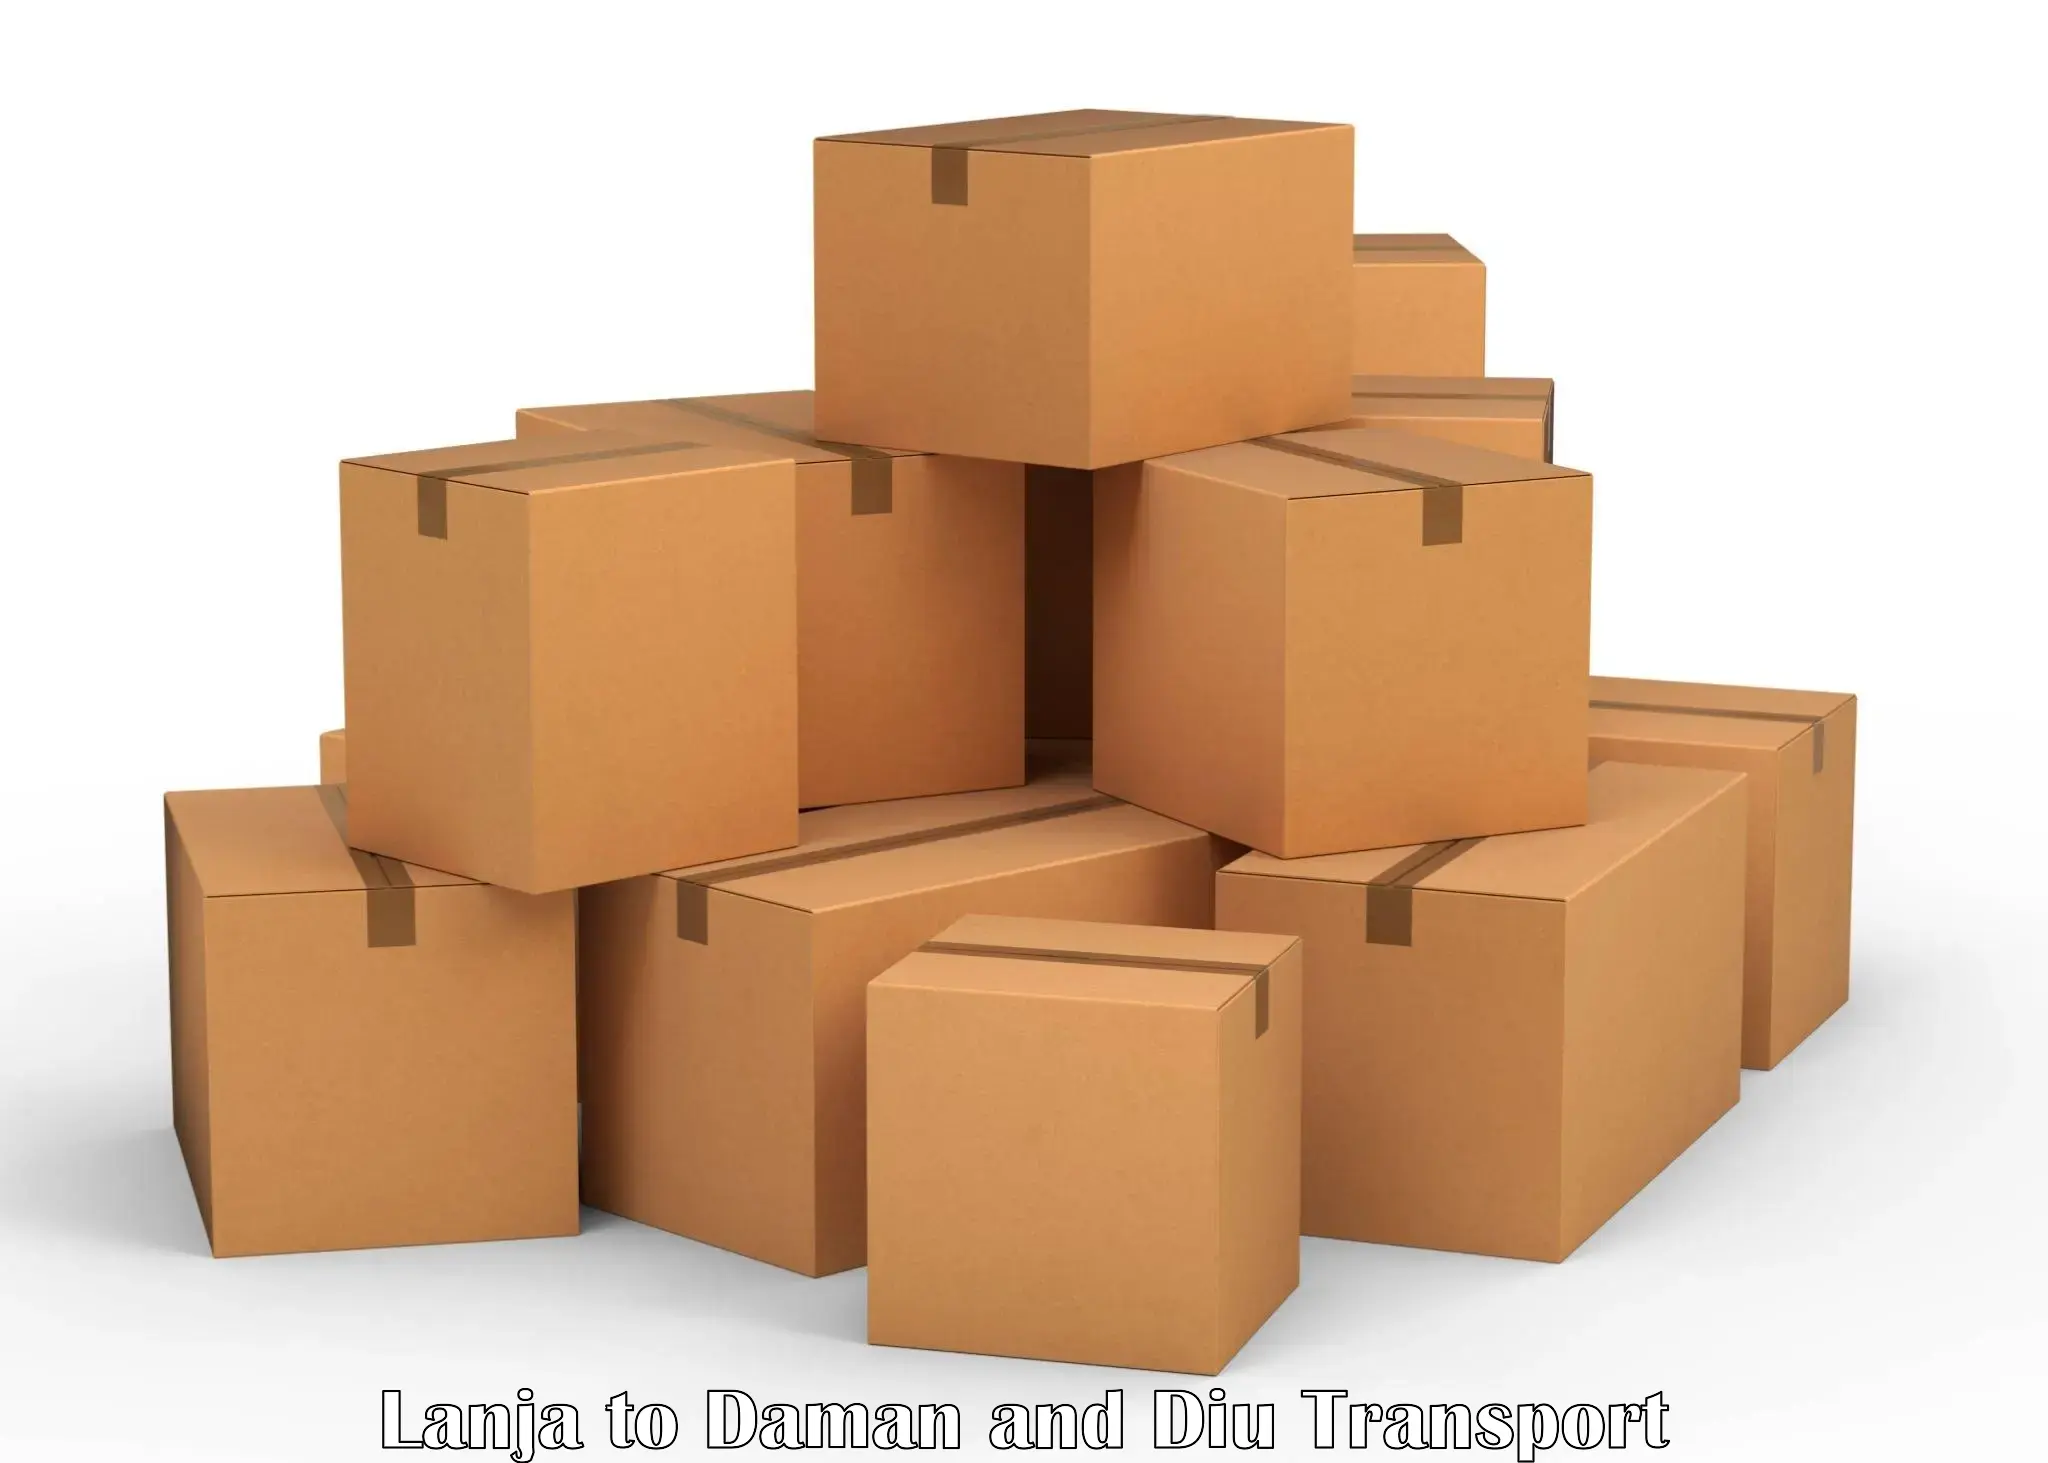 India truck logistics services Lanja to Daman and Diu